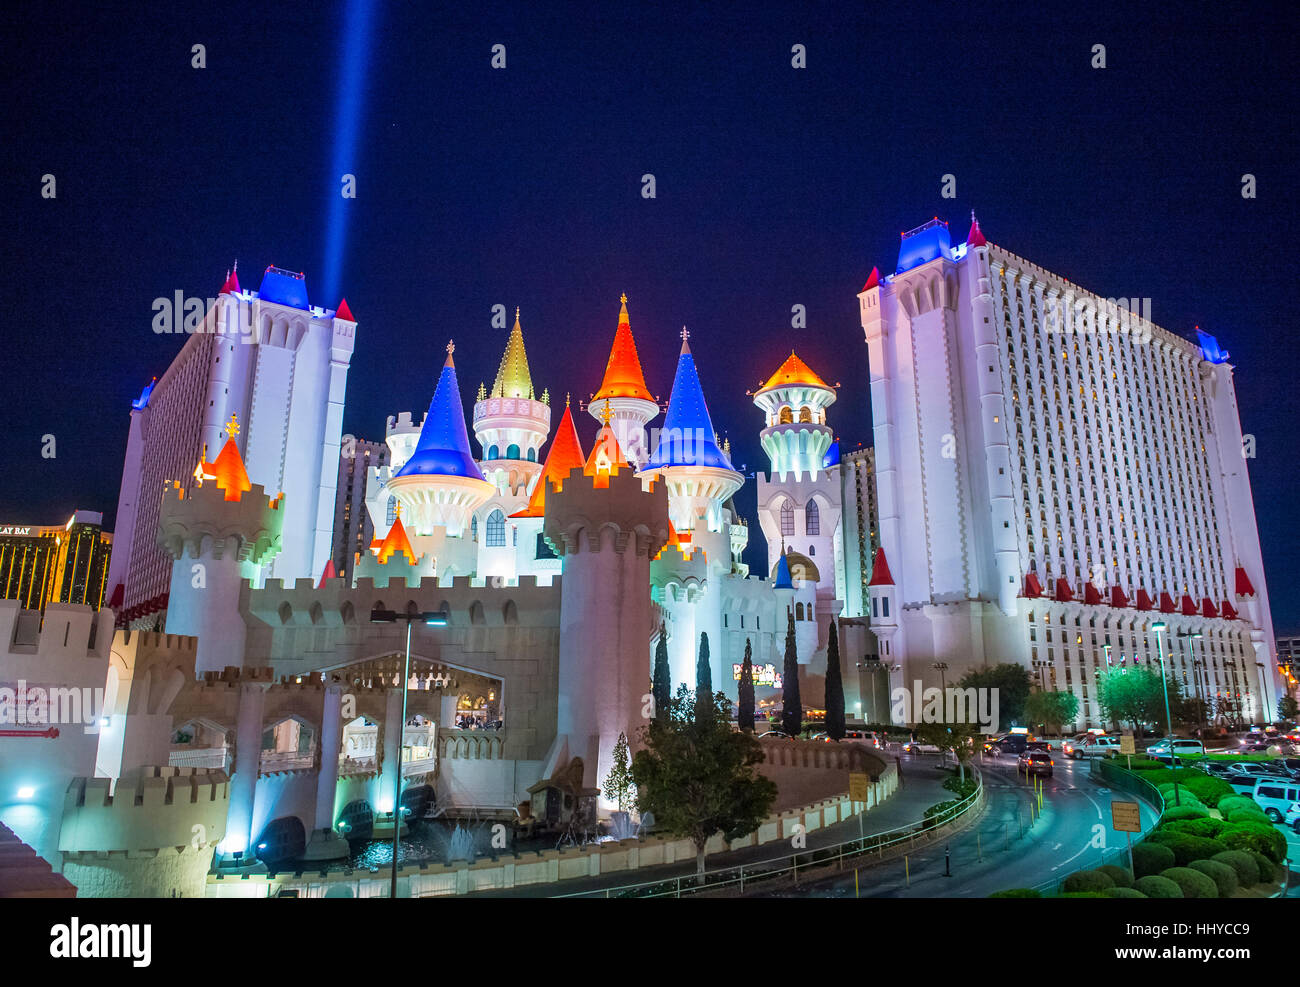 LAS VEGAS - NOV 24 : l'Excalibur Hotel and Casino à Las Vegas le 24 novembre 2016 , l'hôtel a été nommé d'après King Arthur's Sword et ouvert en 199 Banque D'Images